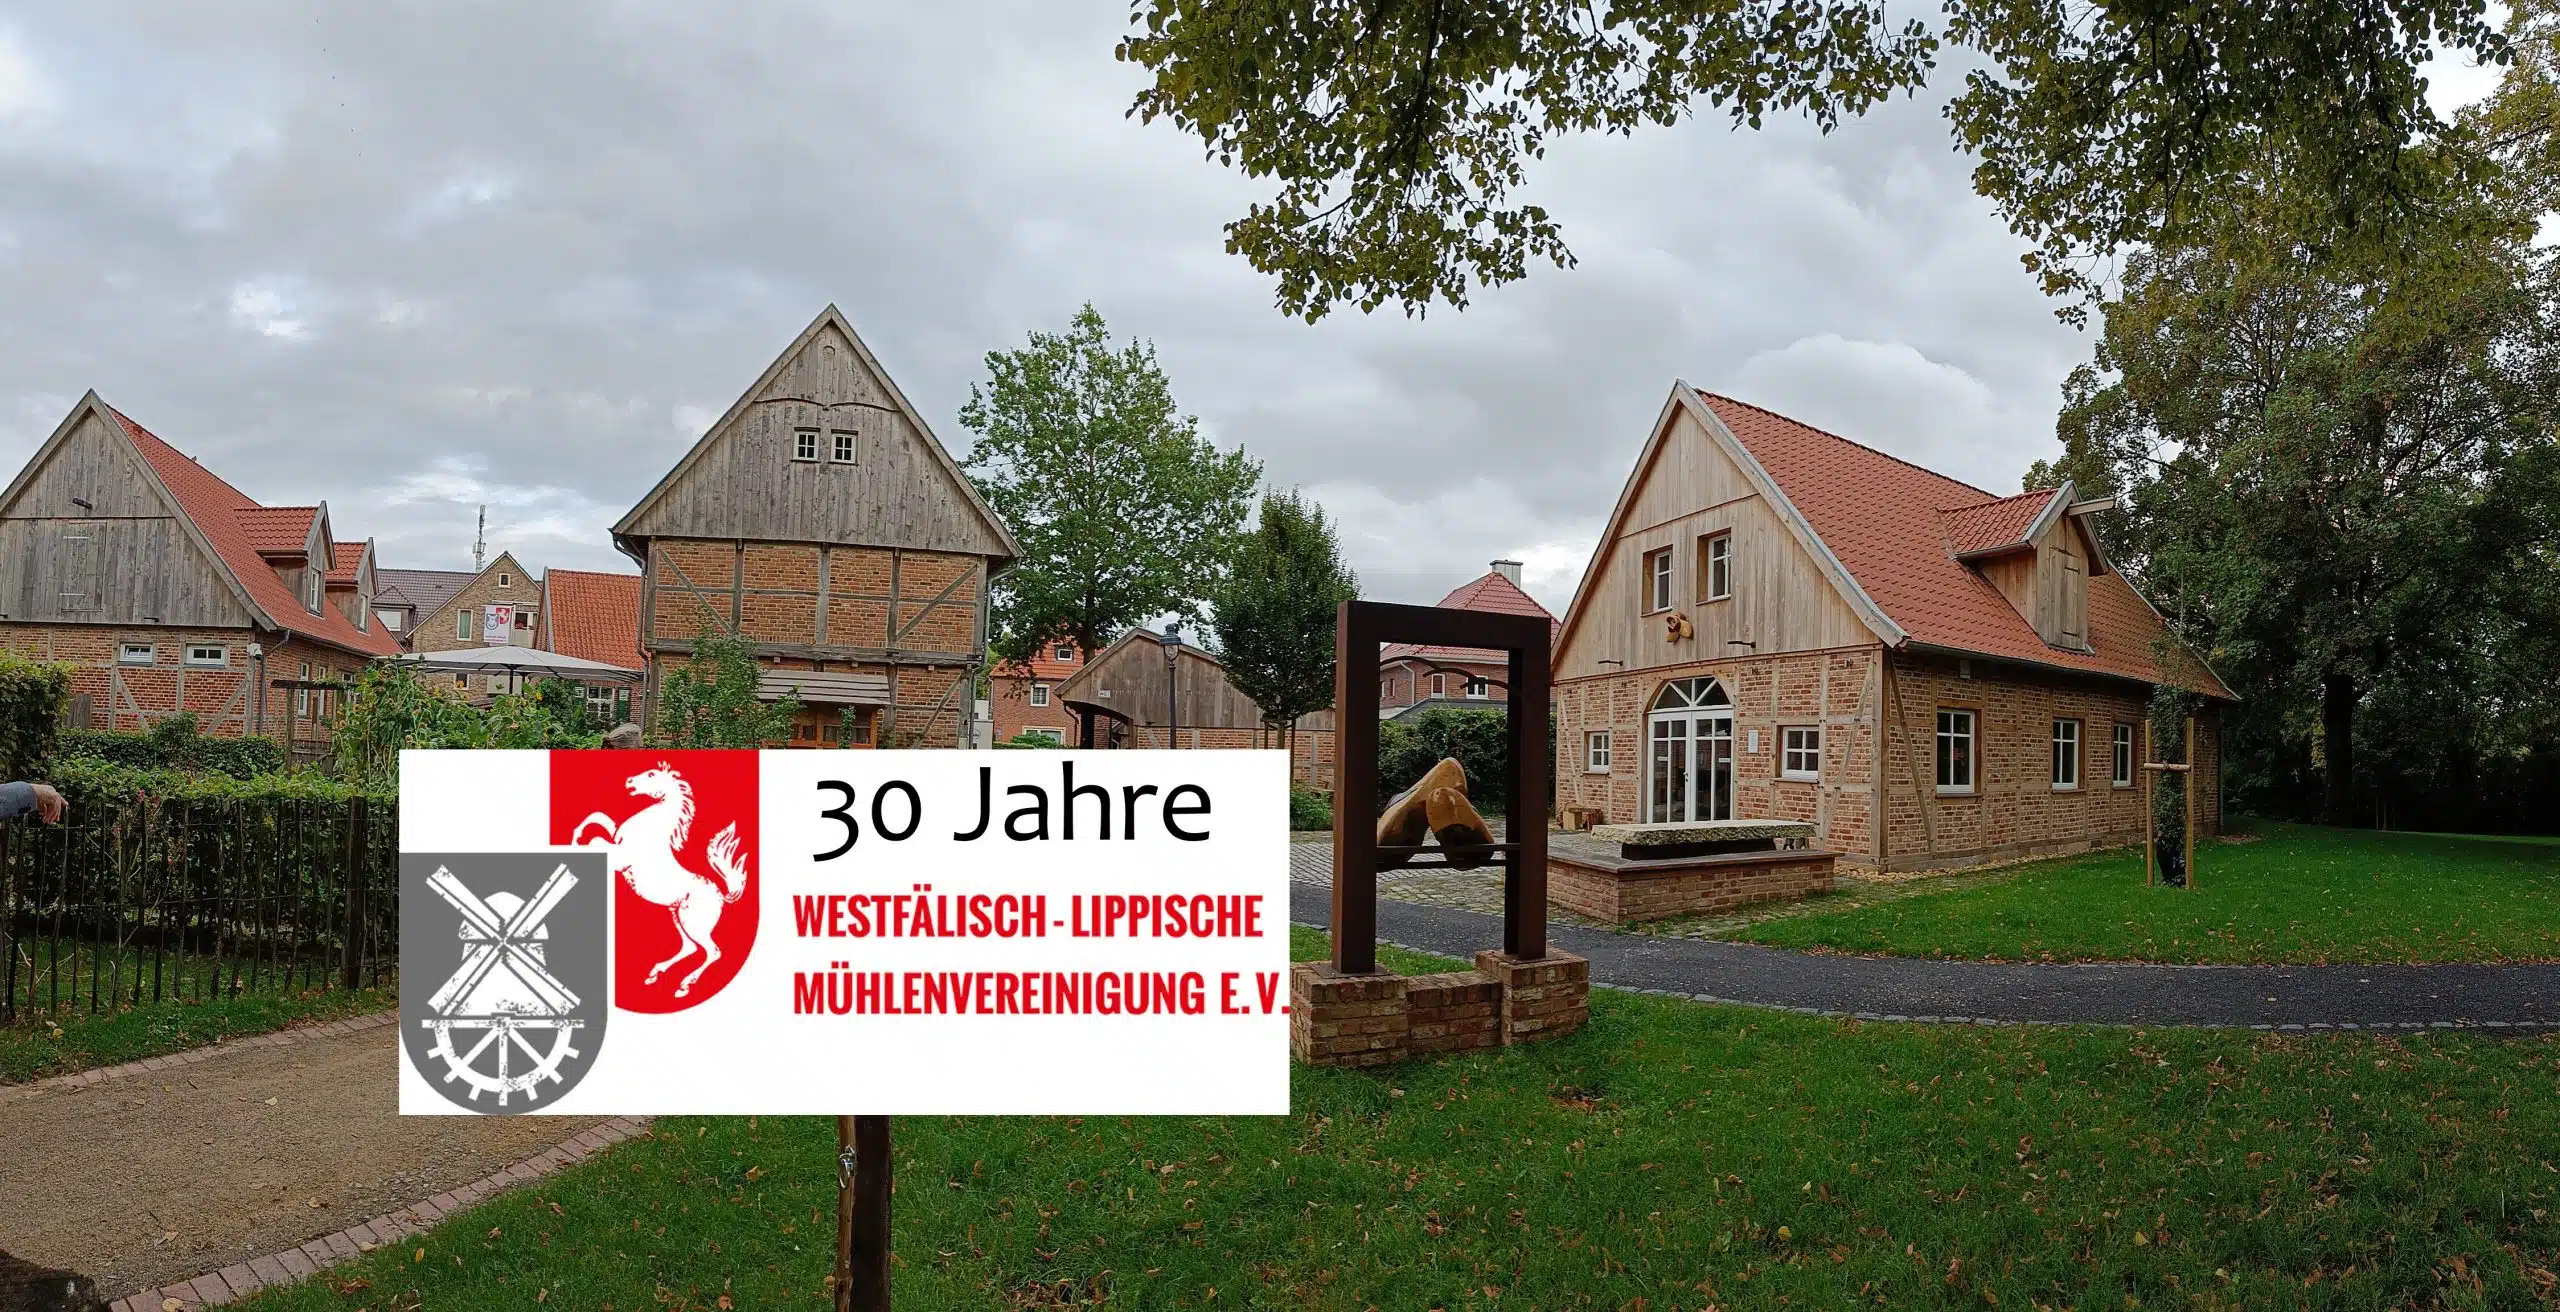 30 Jahre WLMV-Jubiläum in Altenberge